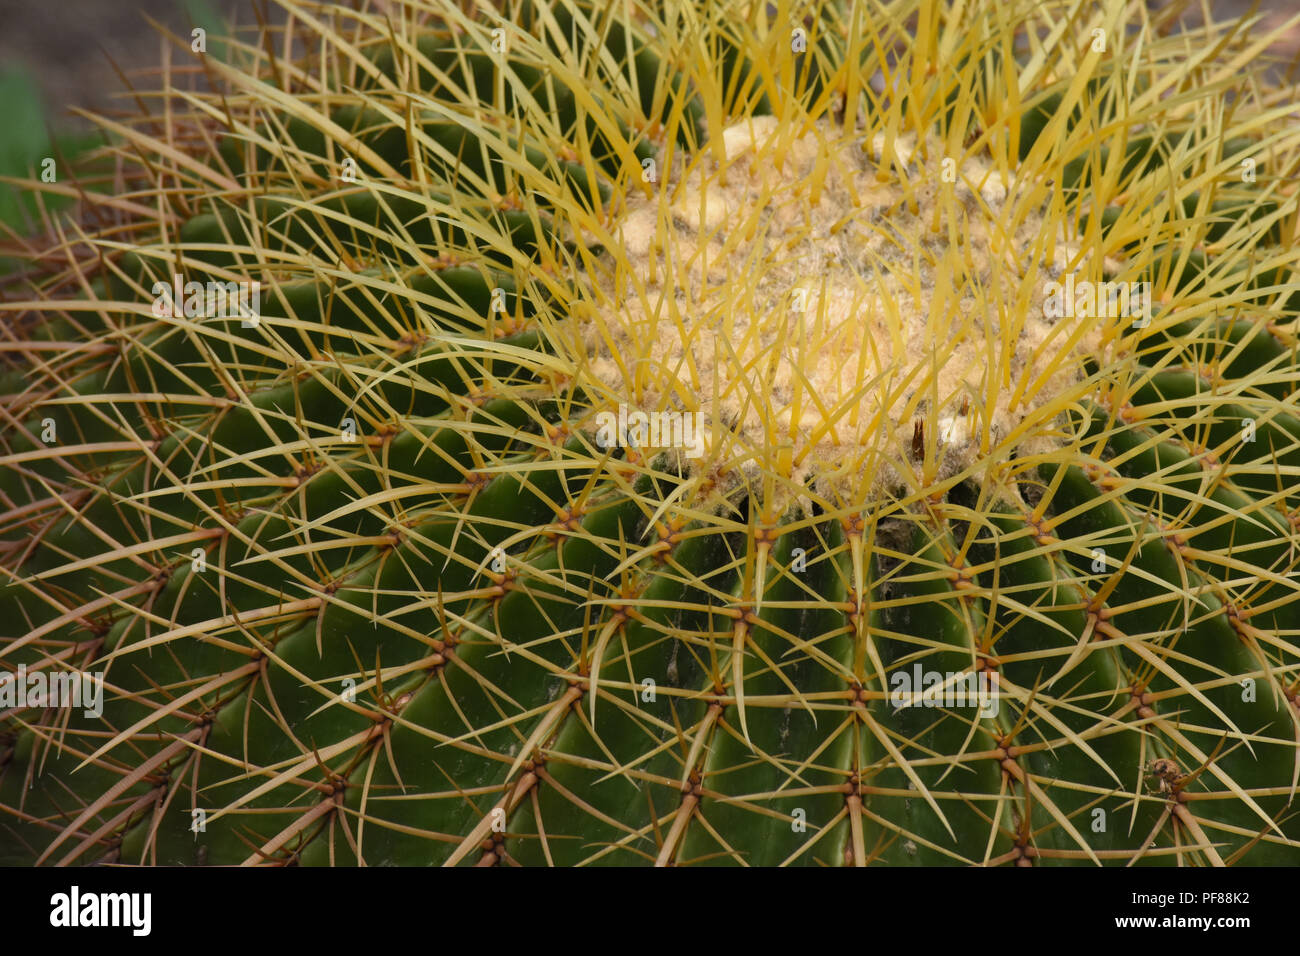 Close up of golden barrel cactus. Stock Photo